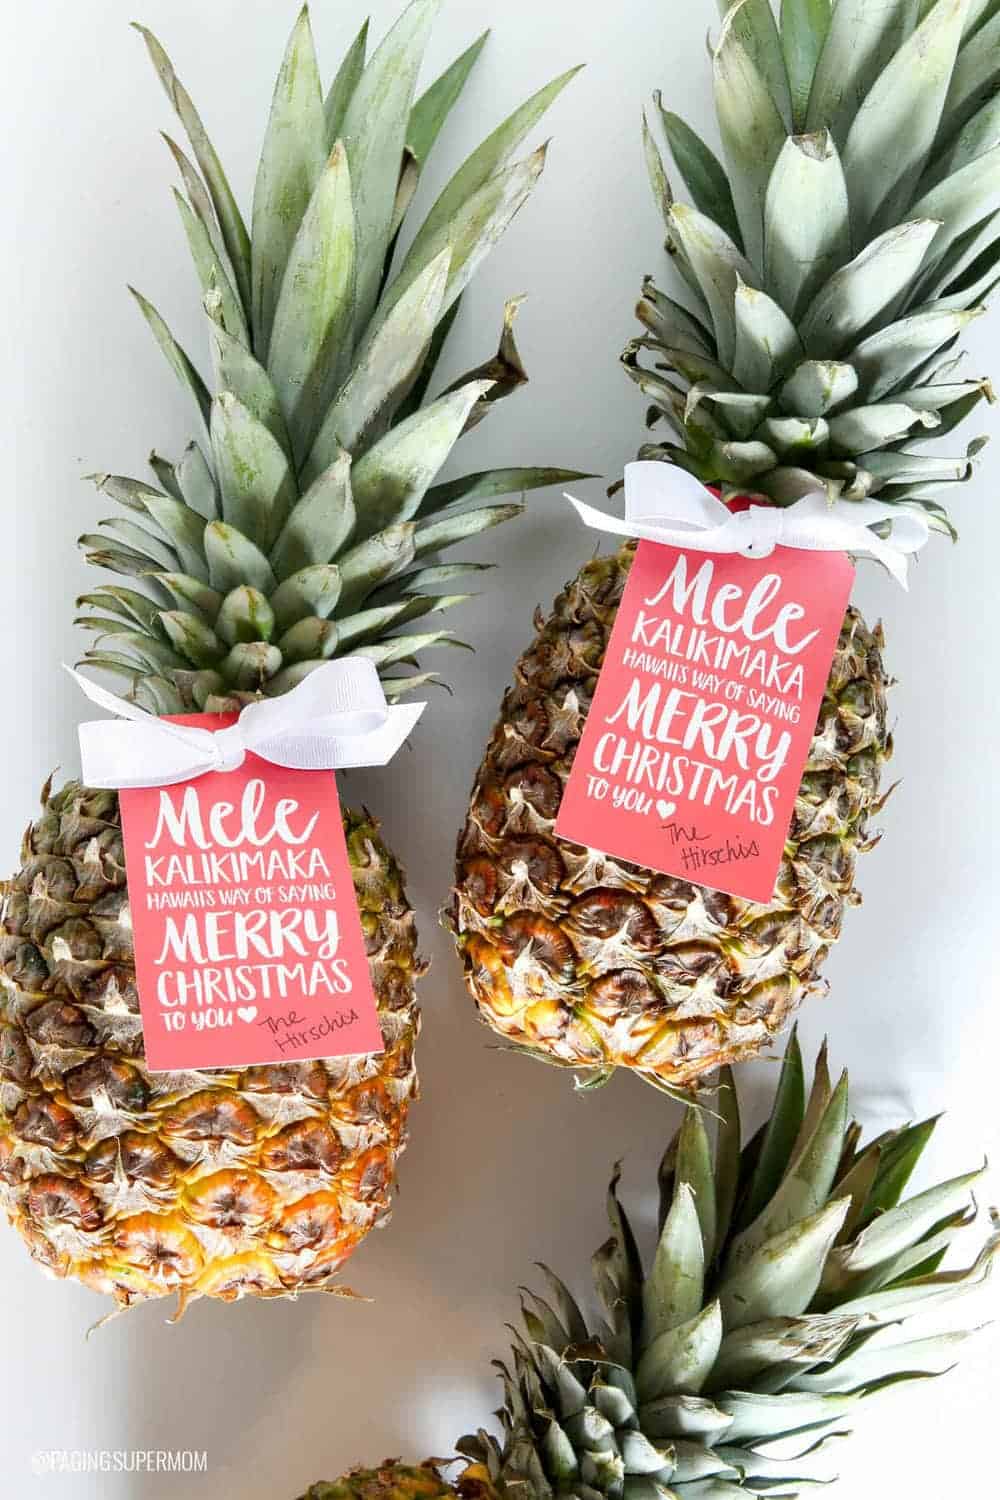 Pineapple gift idea